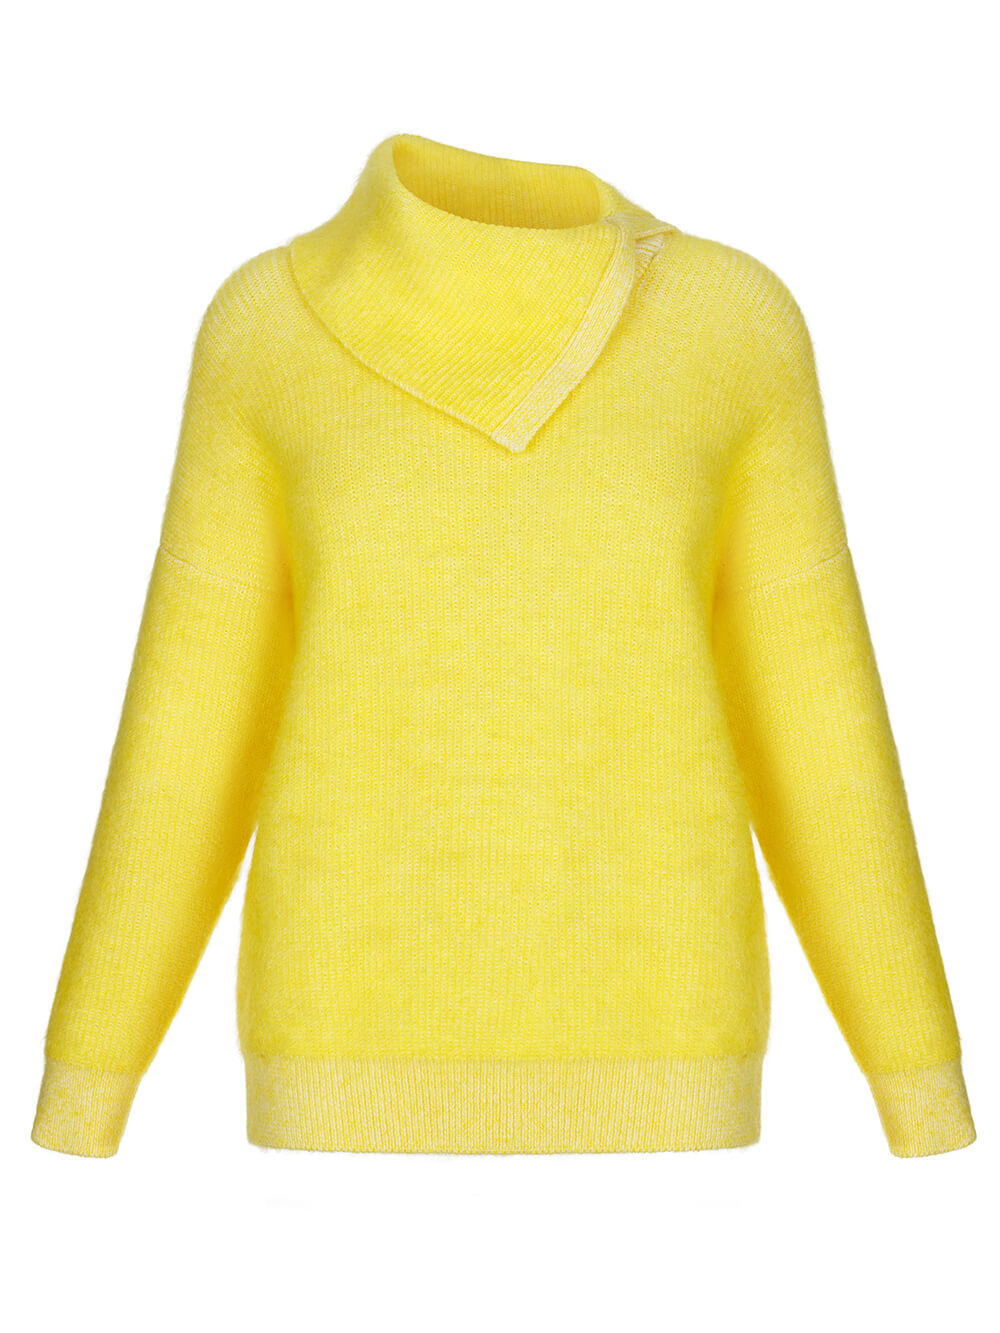 Женский свитер желтого цвета из мохера и кашемира - фото 1